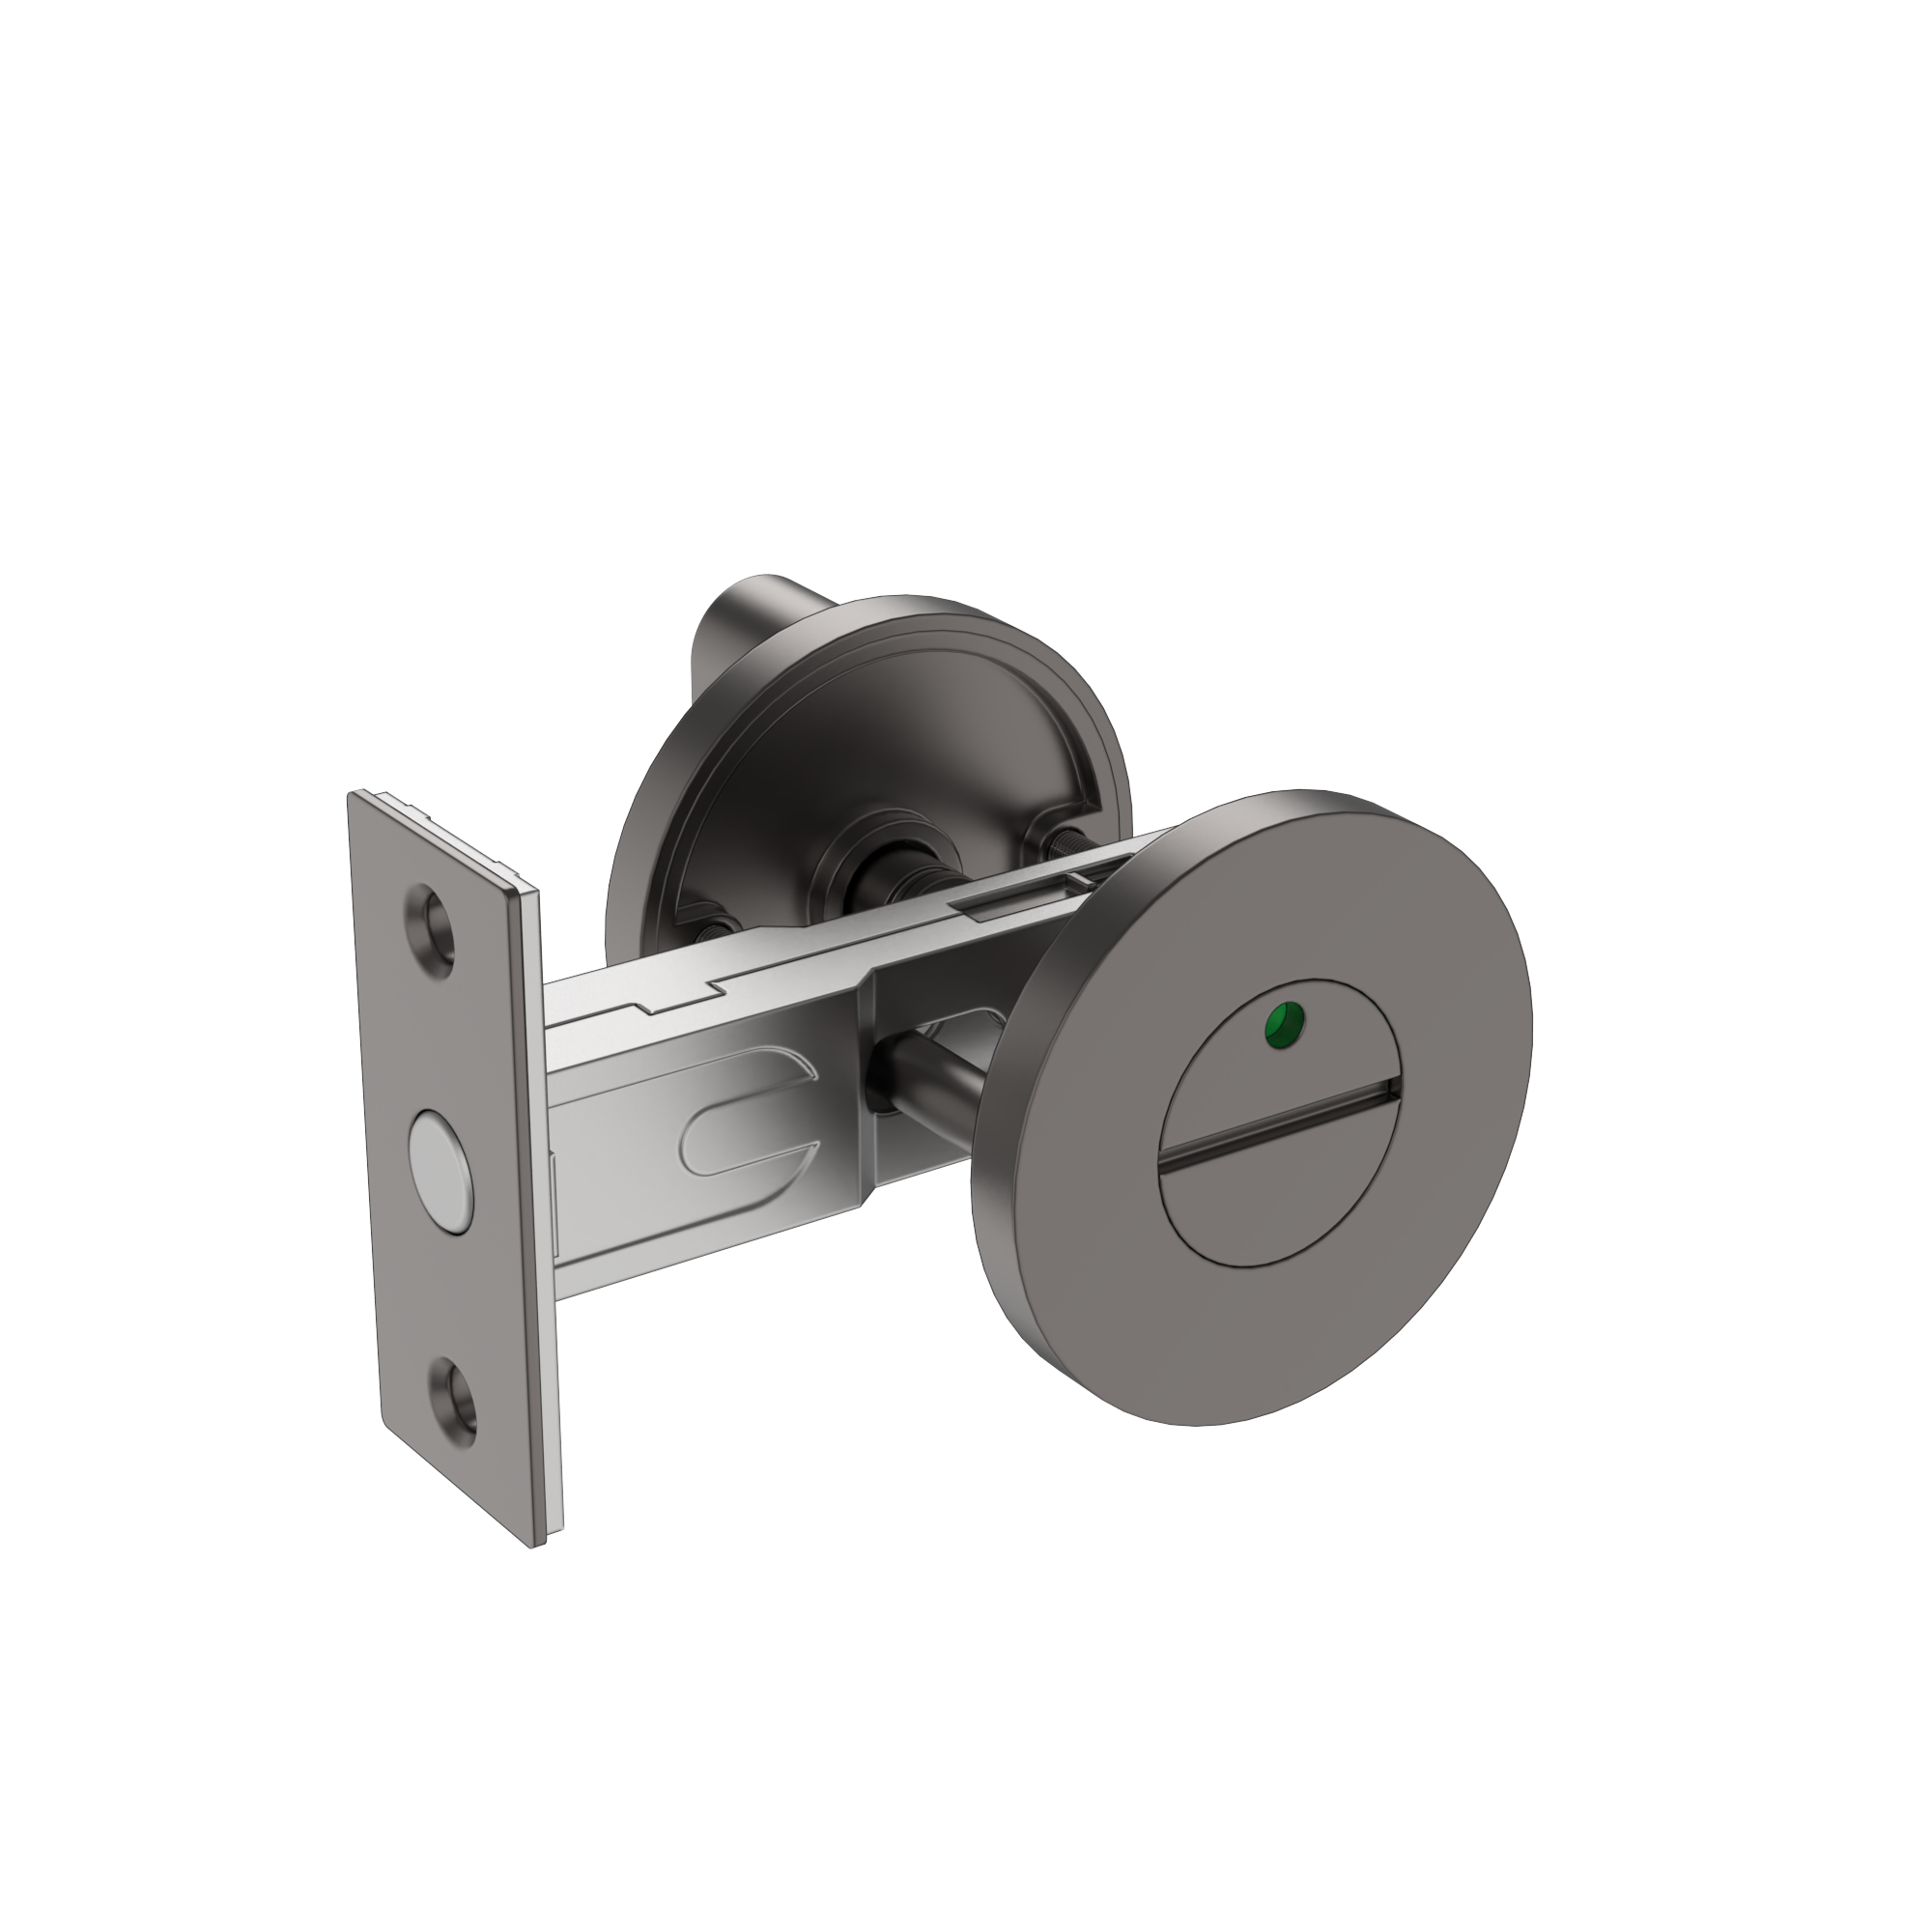 Descubre las mejores cerraduras con indicador de privacidad. D607